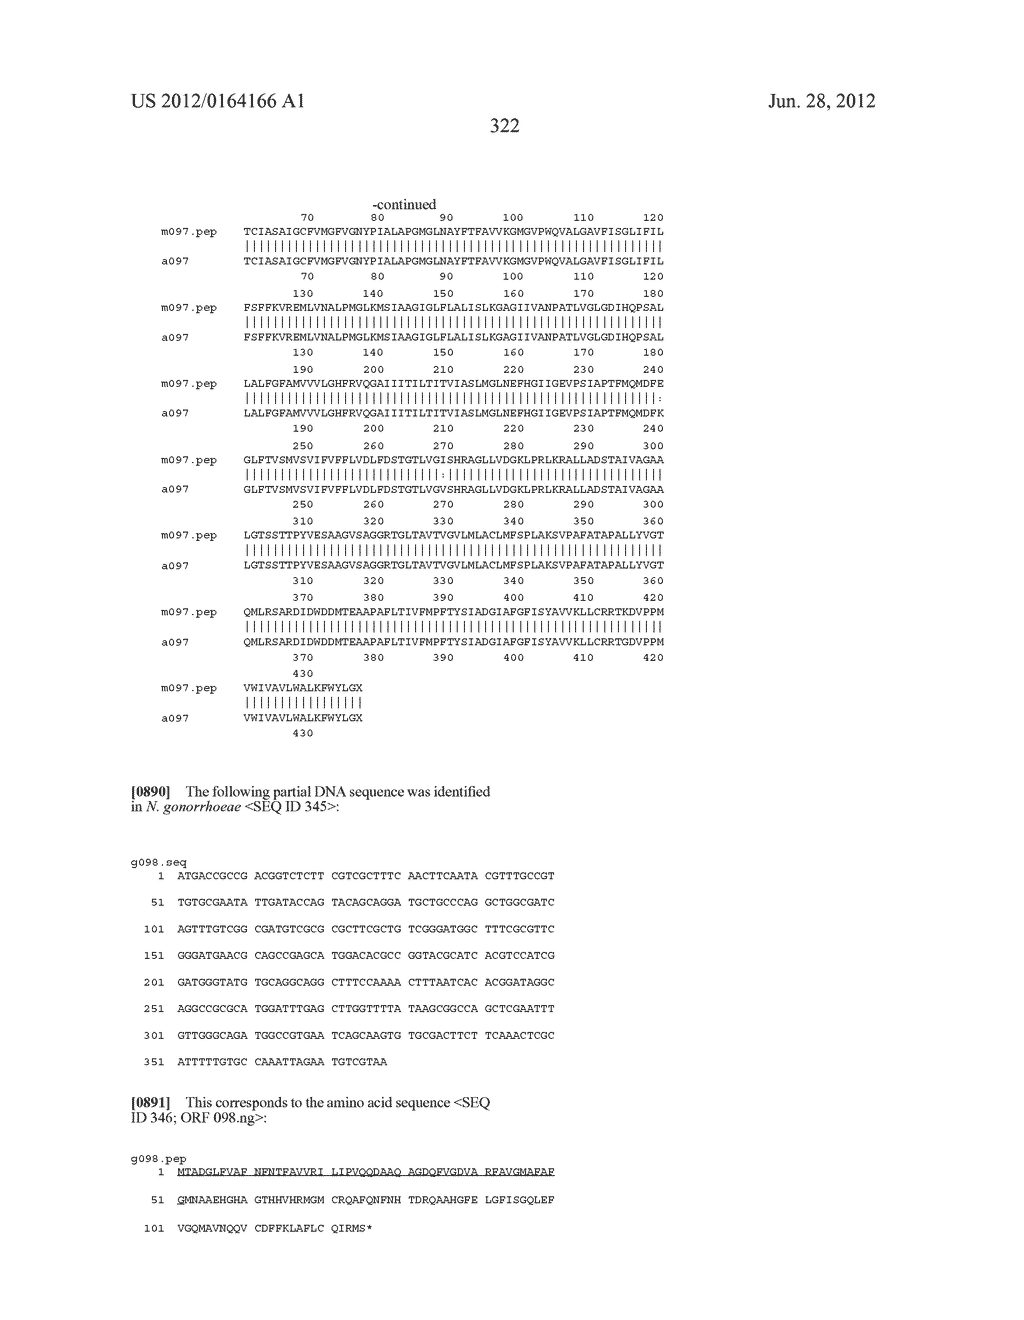 NEISSERIA MENINGITIDIS ANTIGENS AND COMPOSITIONS - diagram, schematic, and image 354